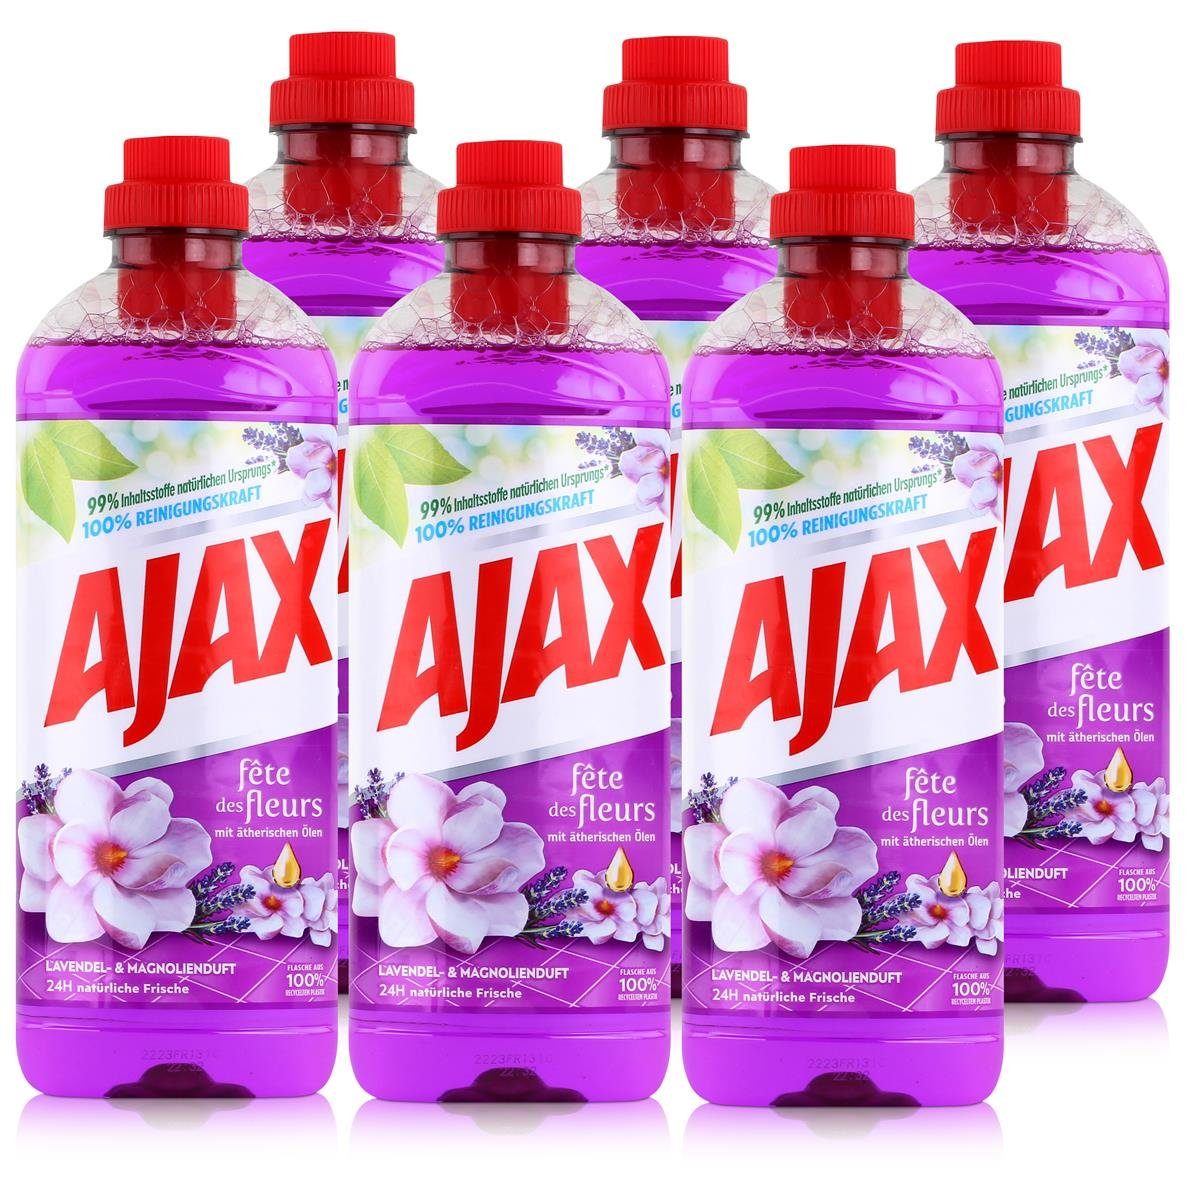 & Magnolie Allzweckreiniger Bodenreiniger AJAX Ajax 1 Liter Allzweckreiniger (6e - Lavendel-